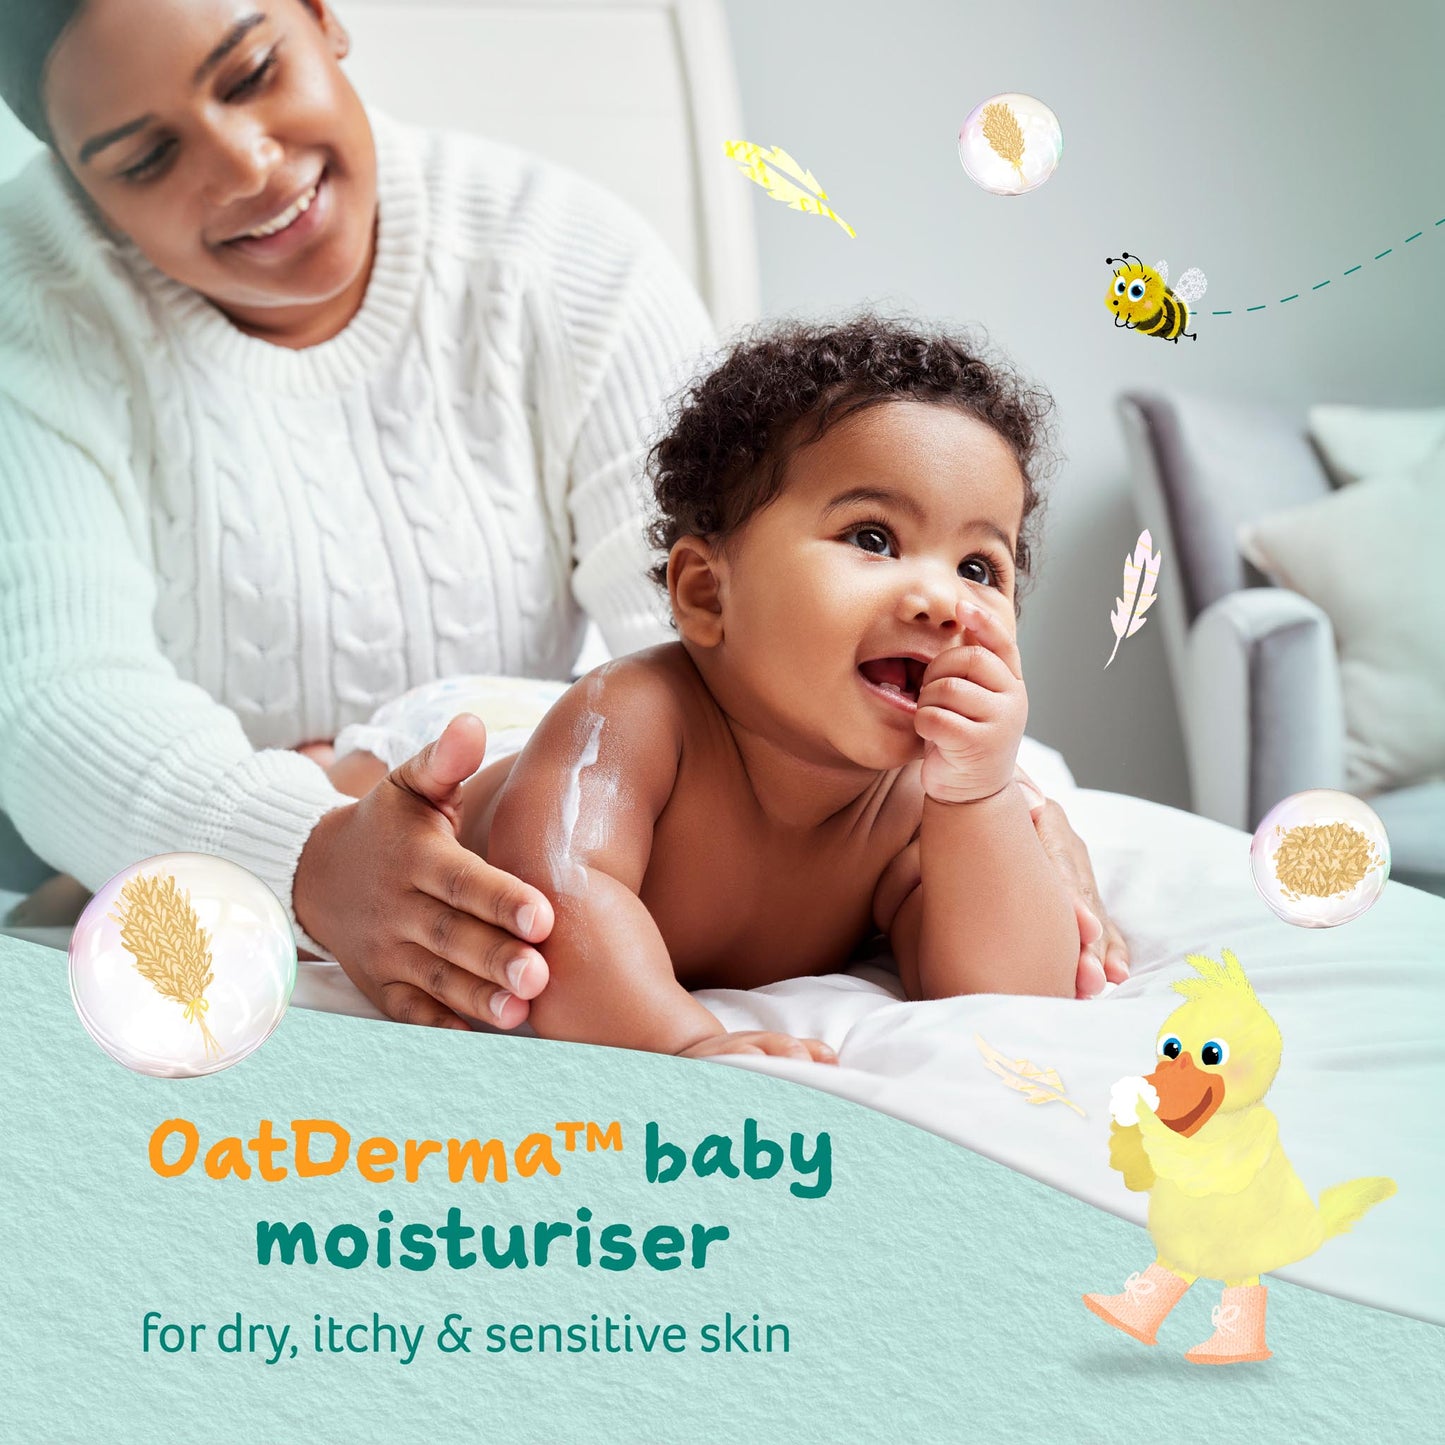 Childs Farm baby oatderma™ tělové mléko bez parfemace